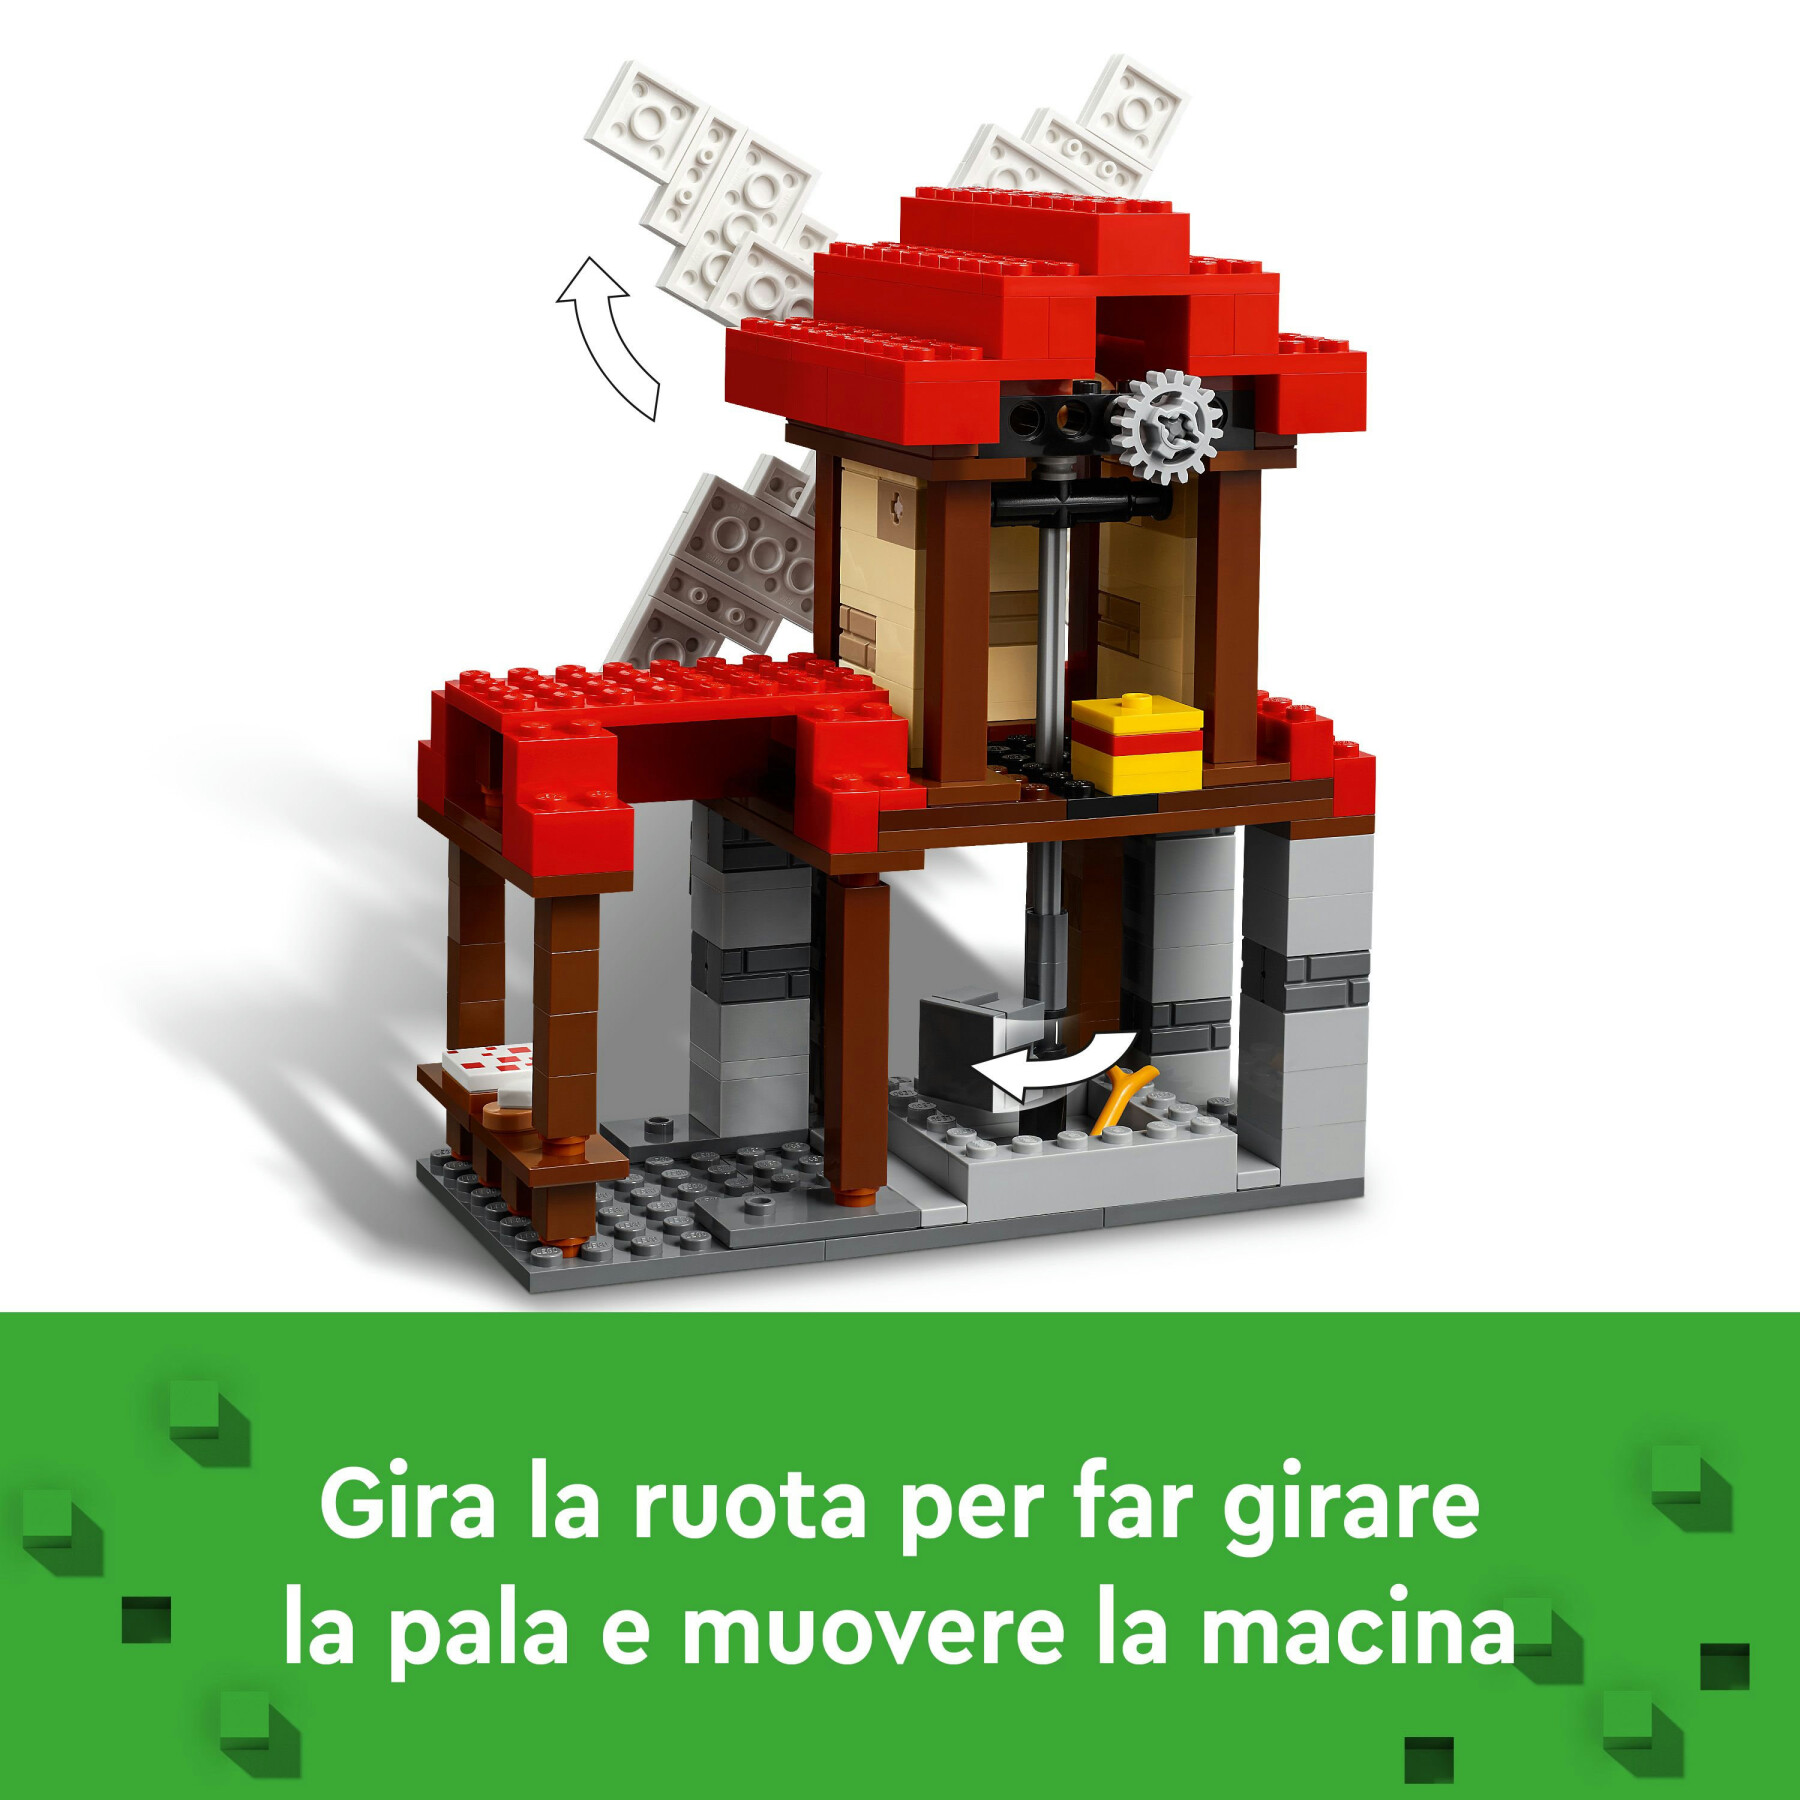 Lego minecraft 21262 la fattoria del mulino a vento giocattolo da costruire con personaggi e animali, giochi per bambini 8+ - MINECRAFT